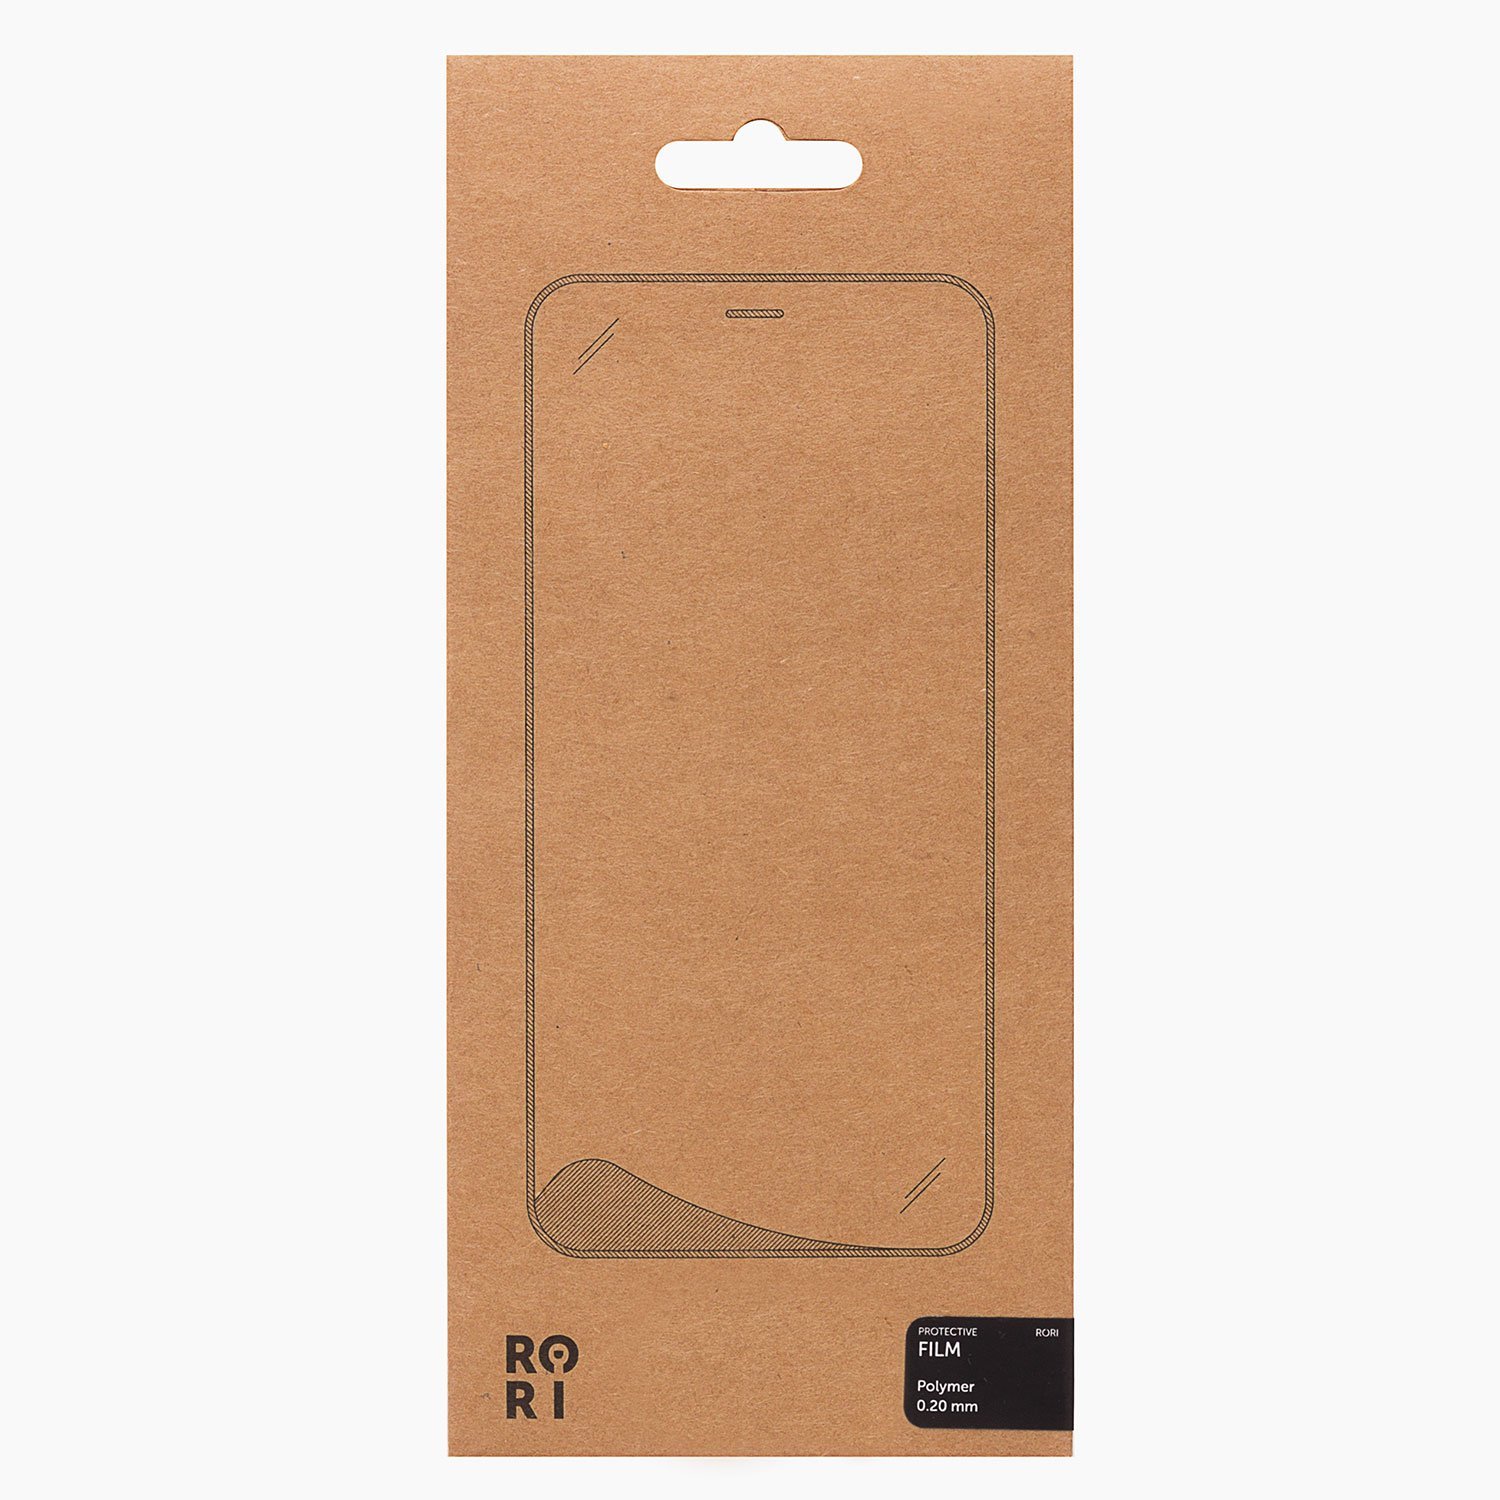 Защитная пленка Rori Polymer для экрана смартфона Apple iPhone 12/12 Pro, поверхность матовая, черная рамка (119489)